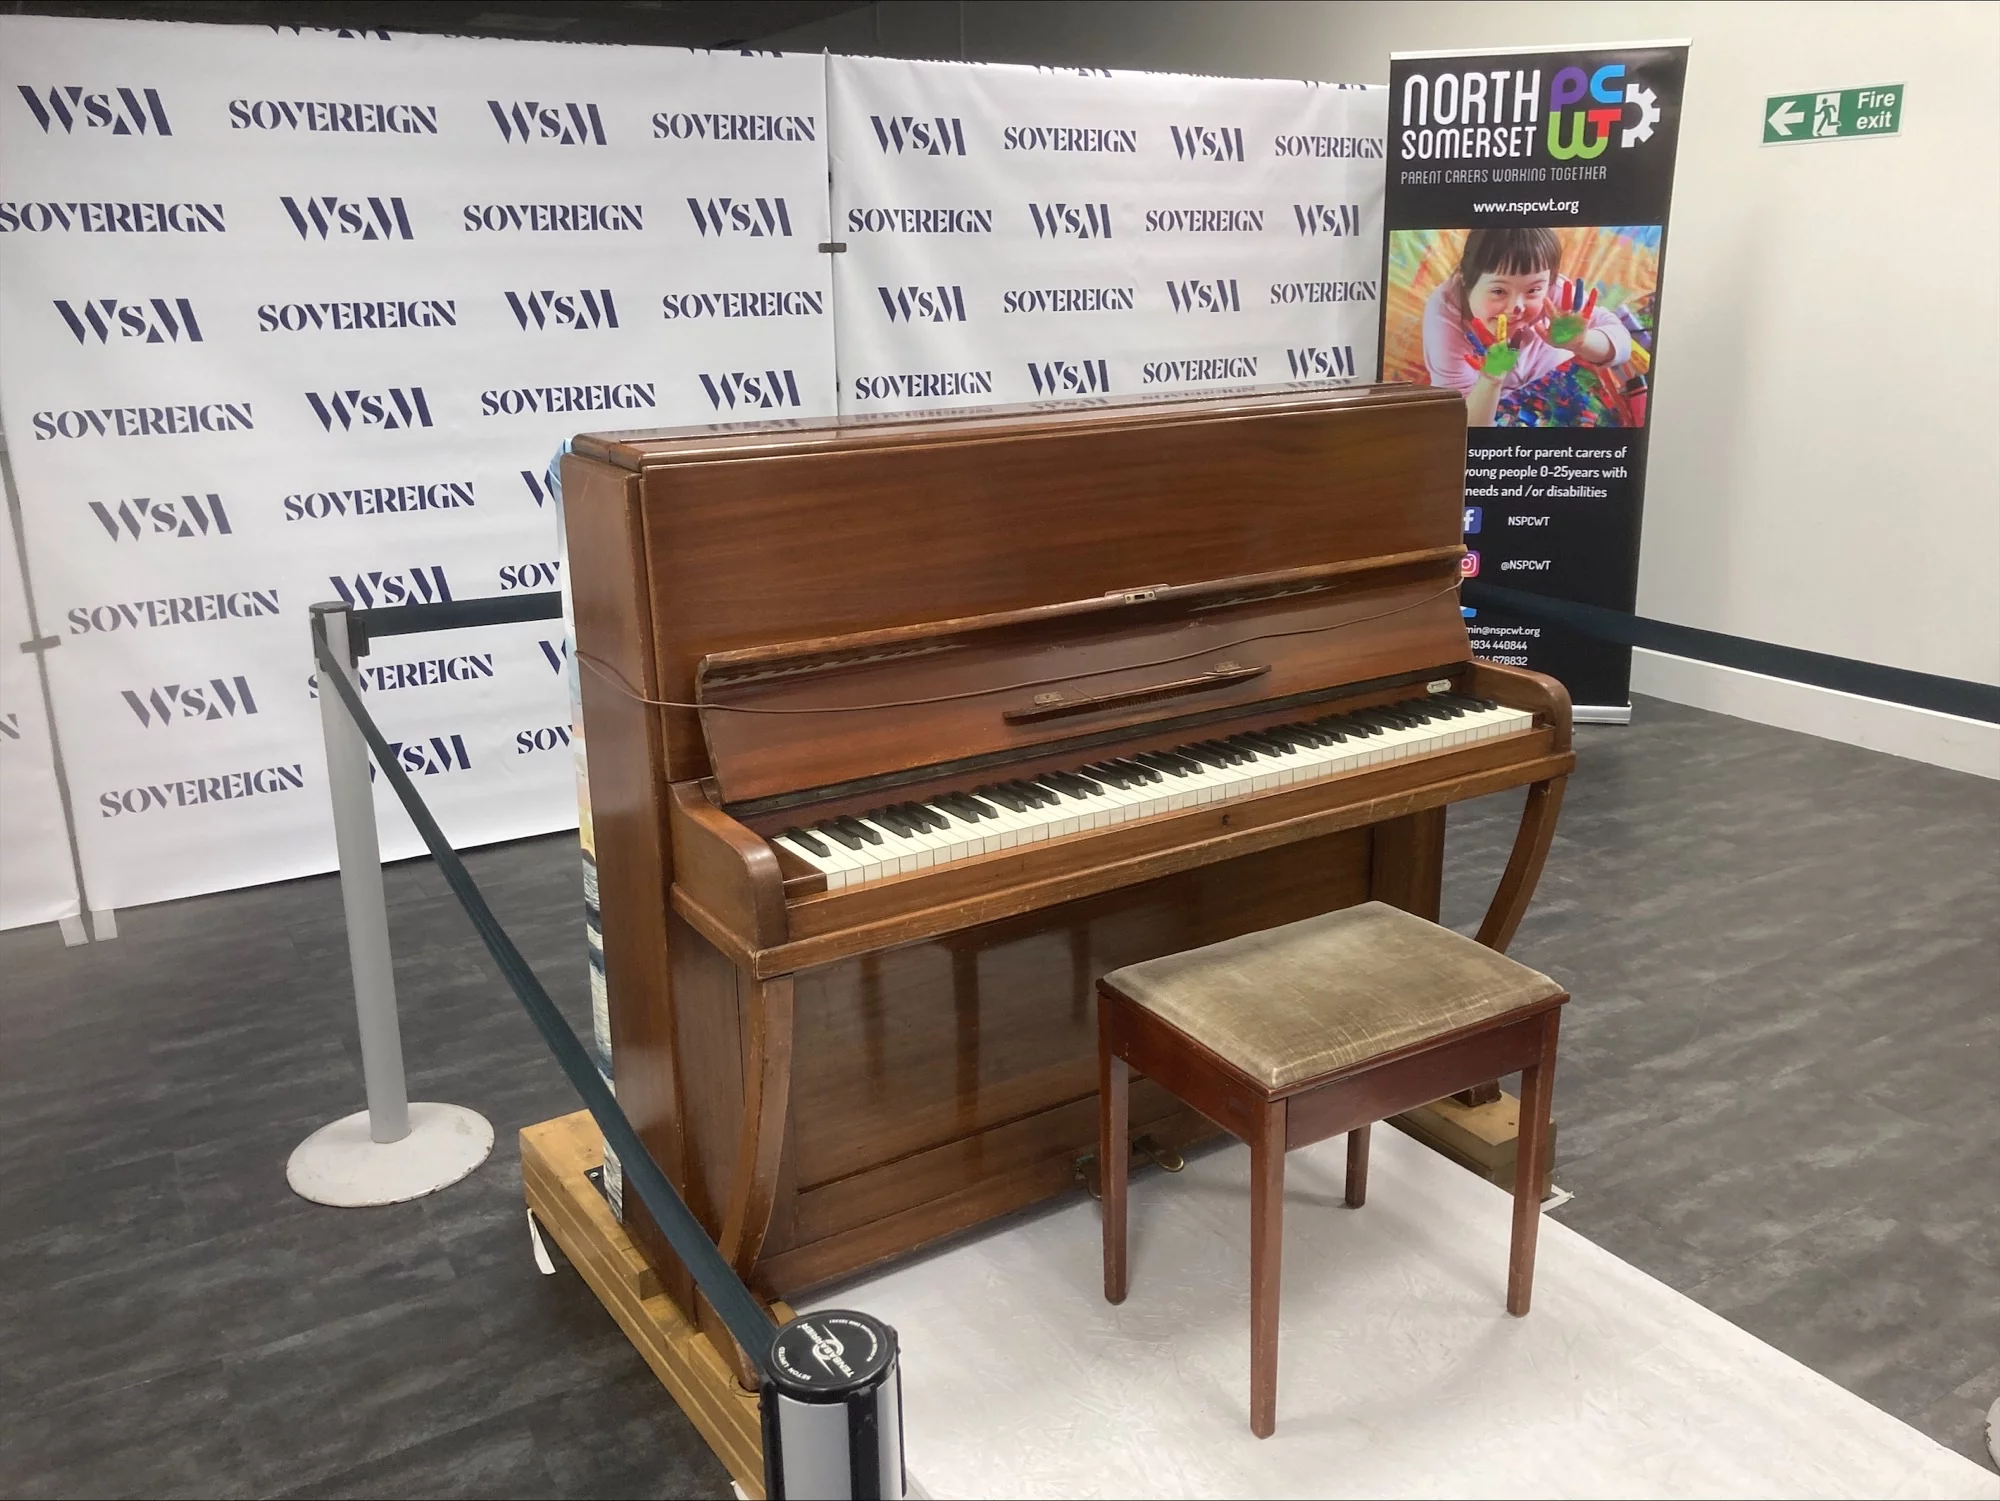 Piano at Sovereign Centre, Weston-super-Mare